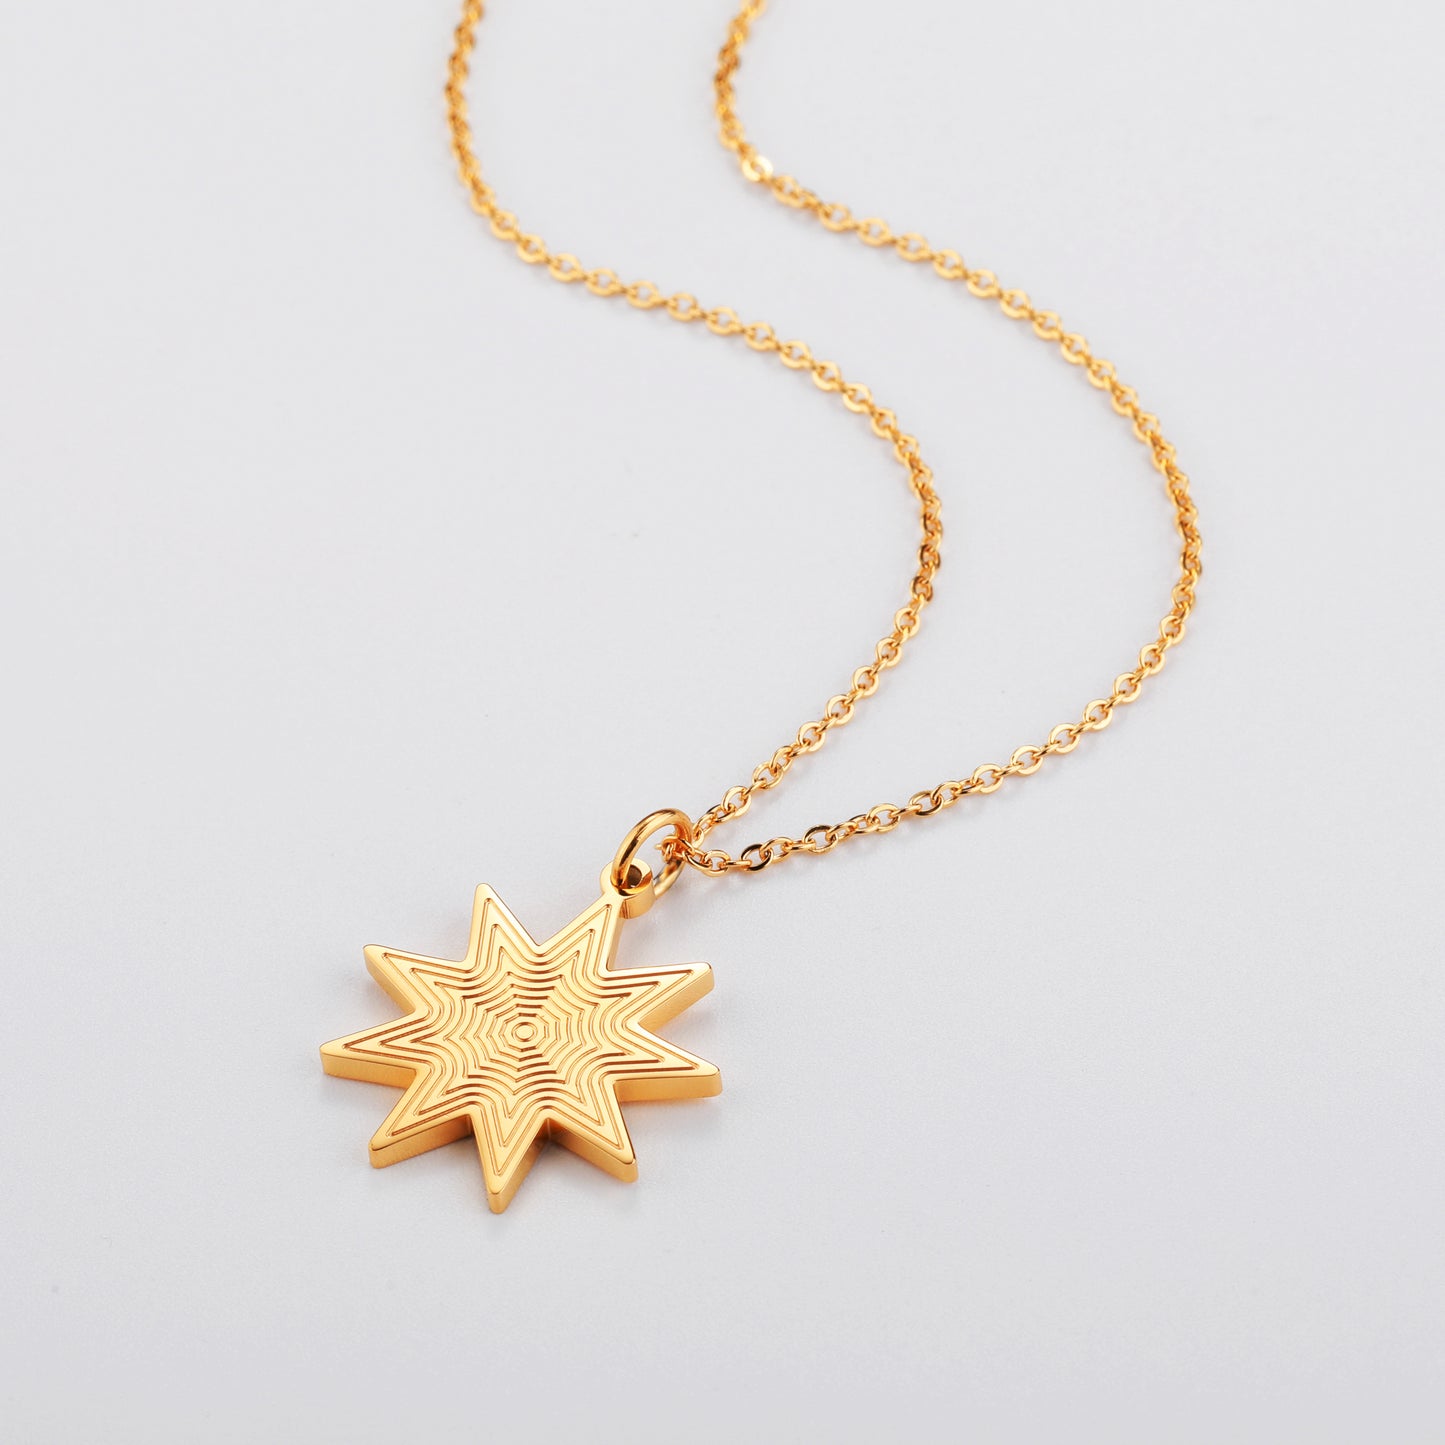 Darjali Jewelry Radiant Star Necklace 18K Gold